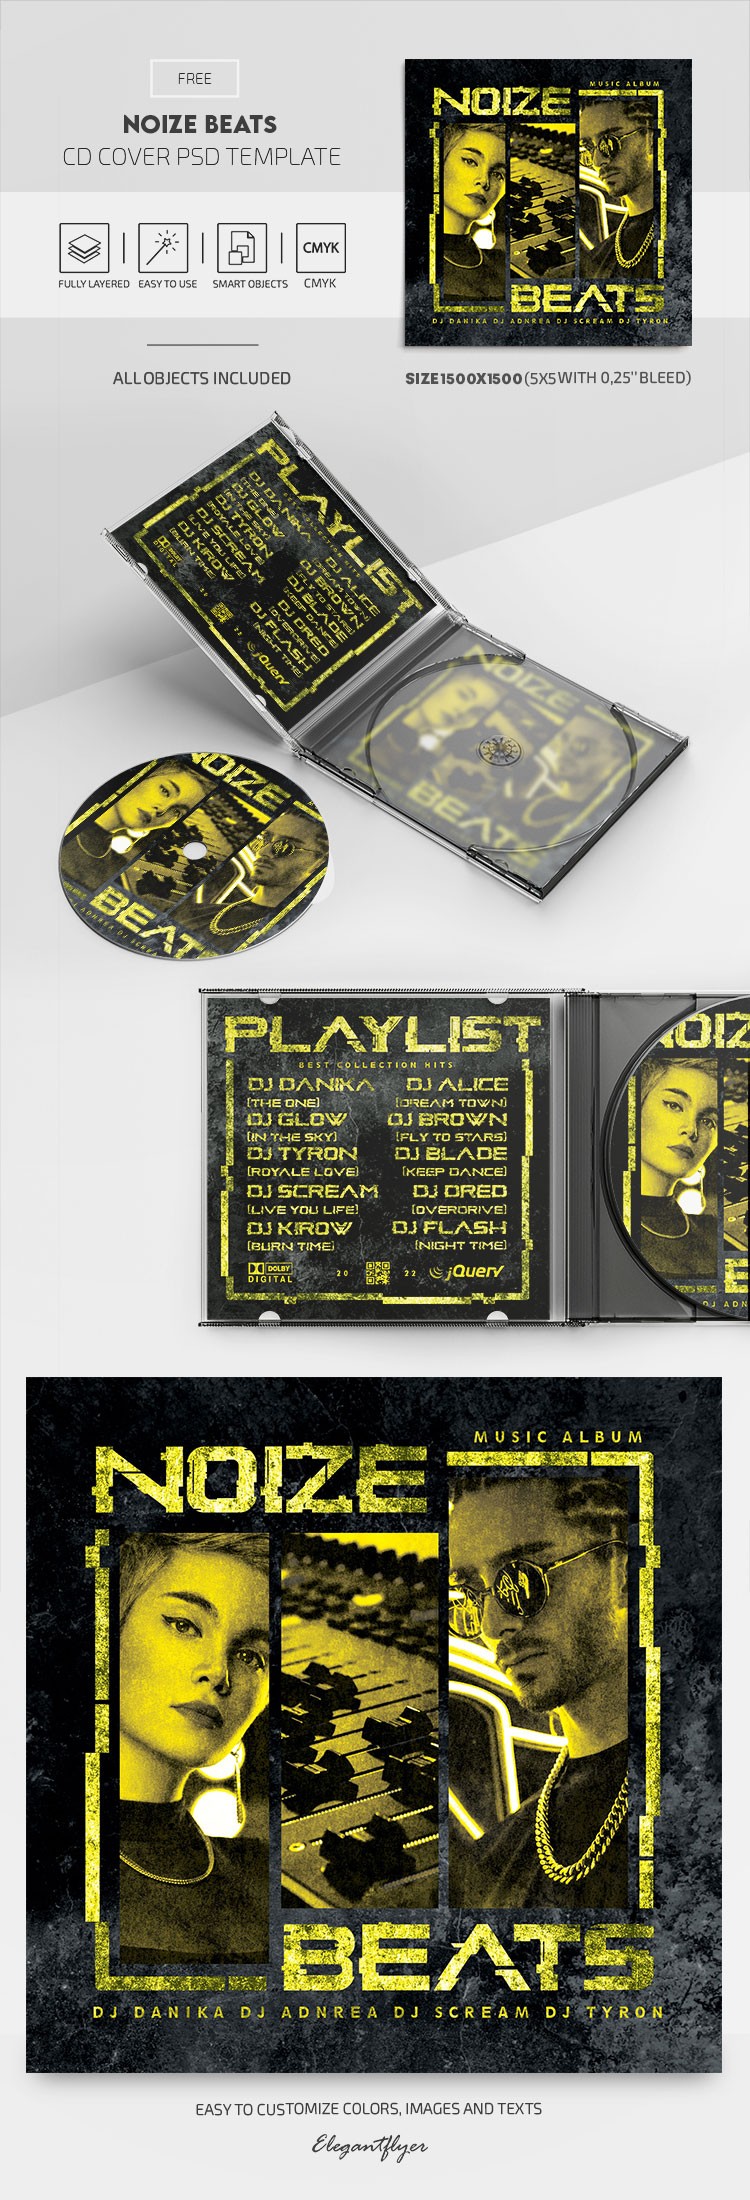 Portada del CD Noize Beats by ElegantFlyer